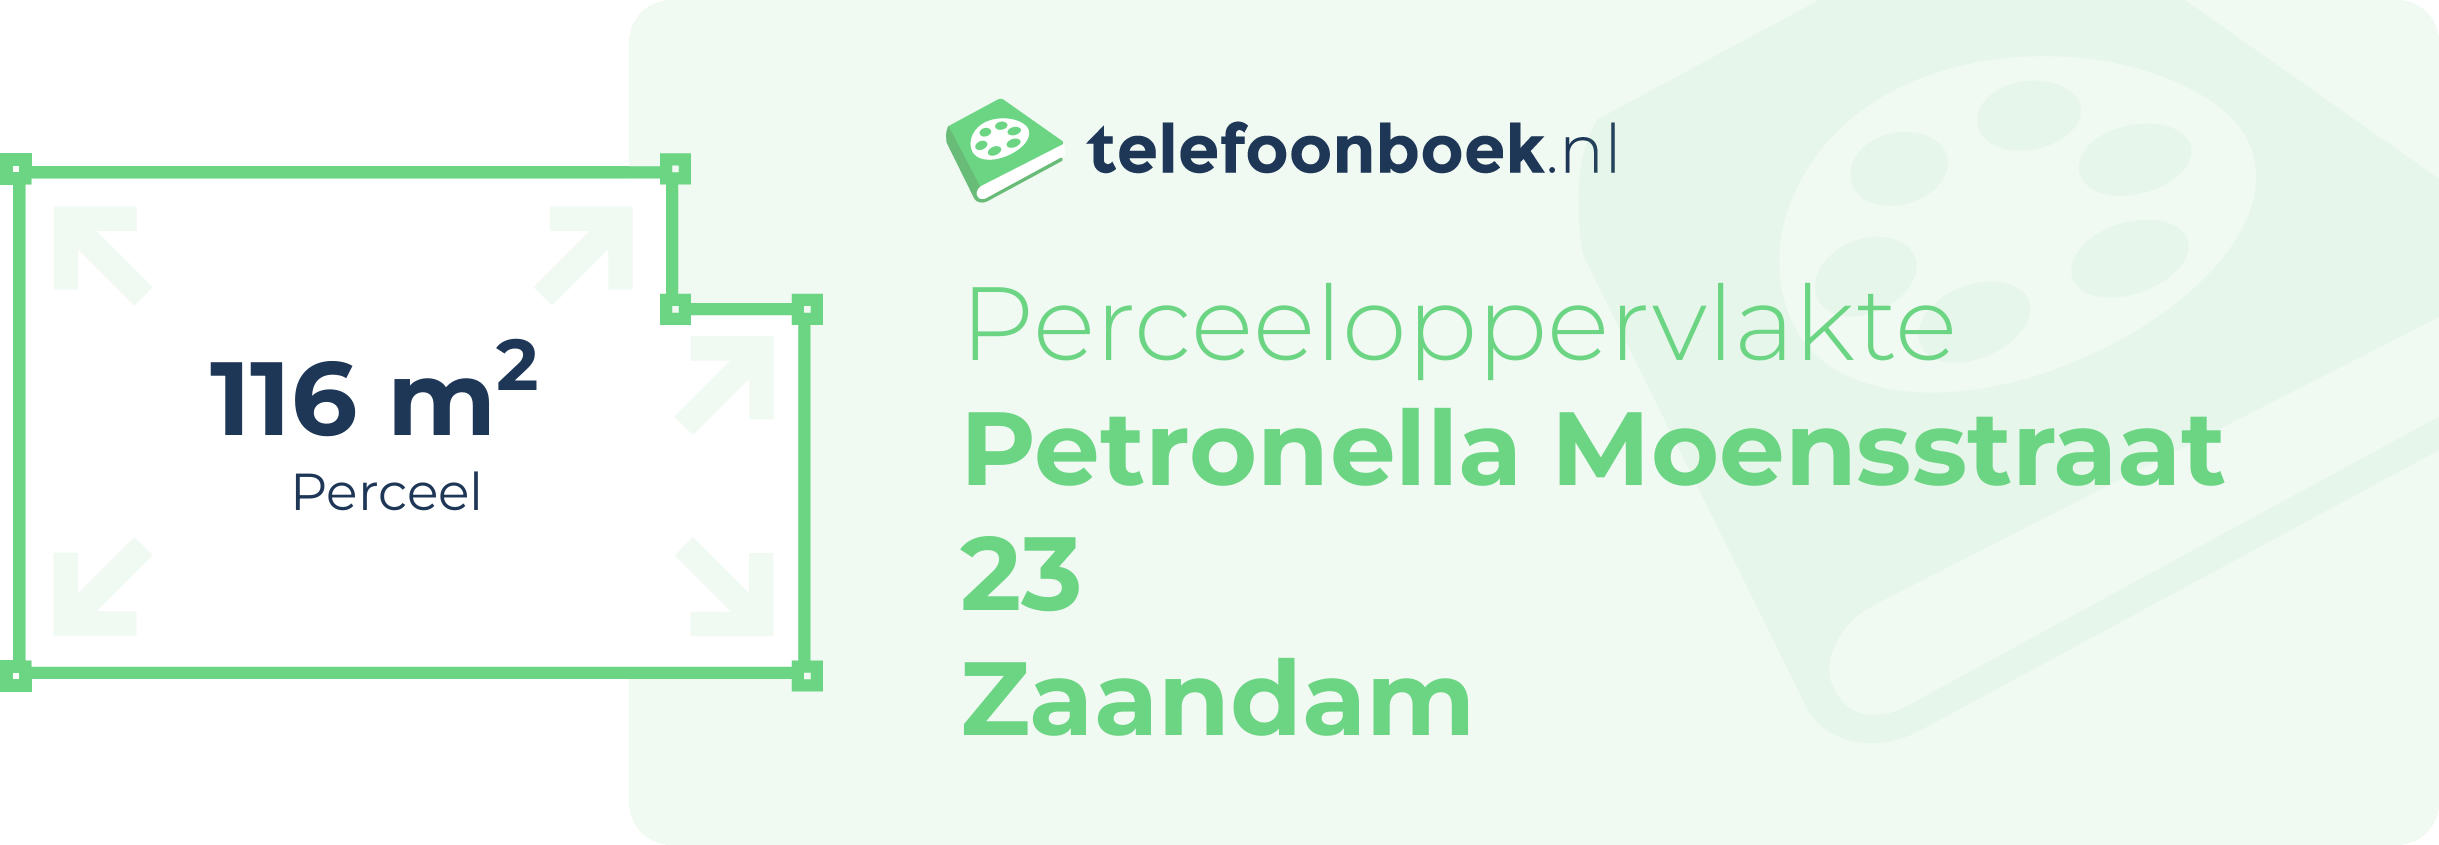 Perceeloppervlakte Petronella Moensstraat 23 Zaandam